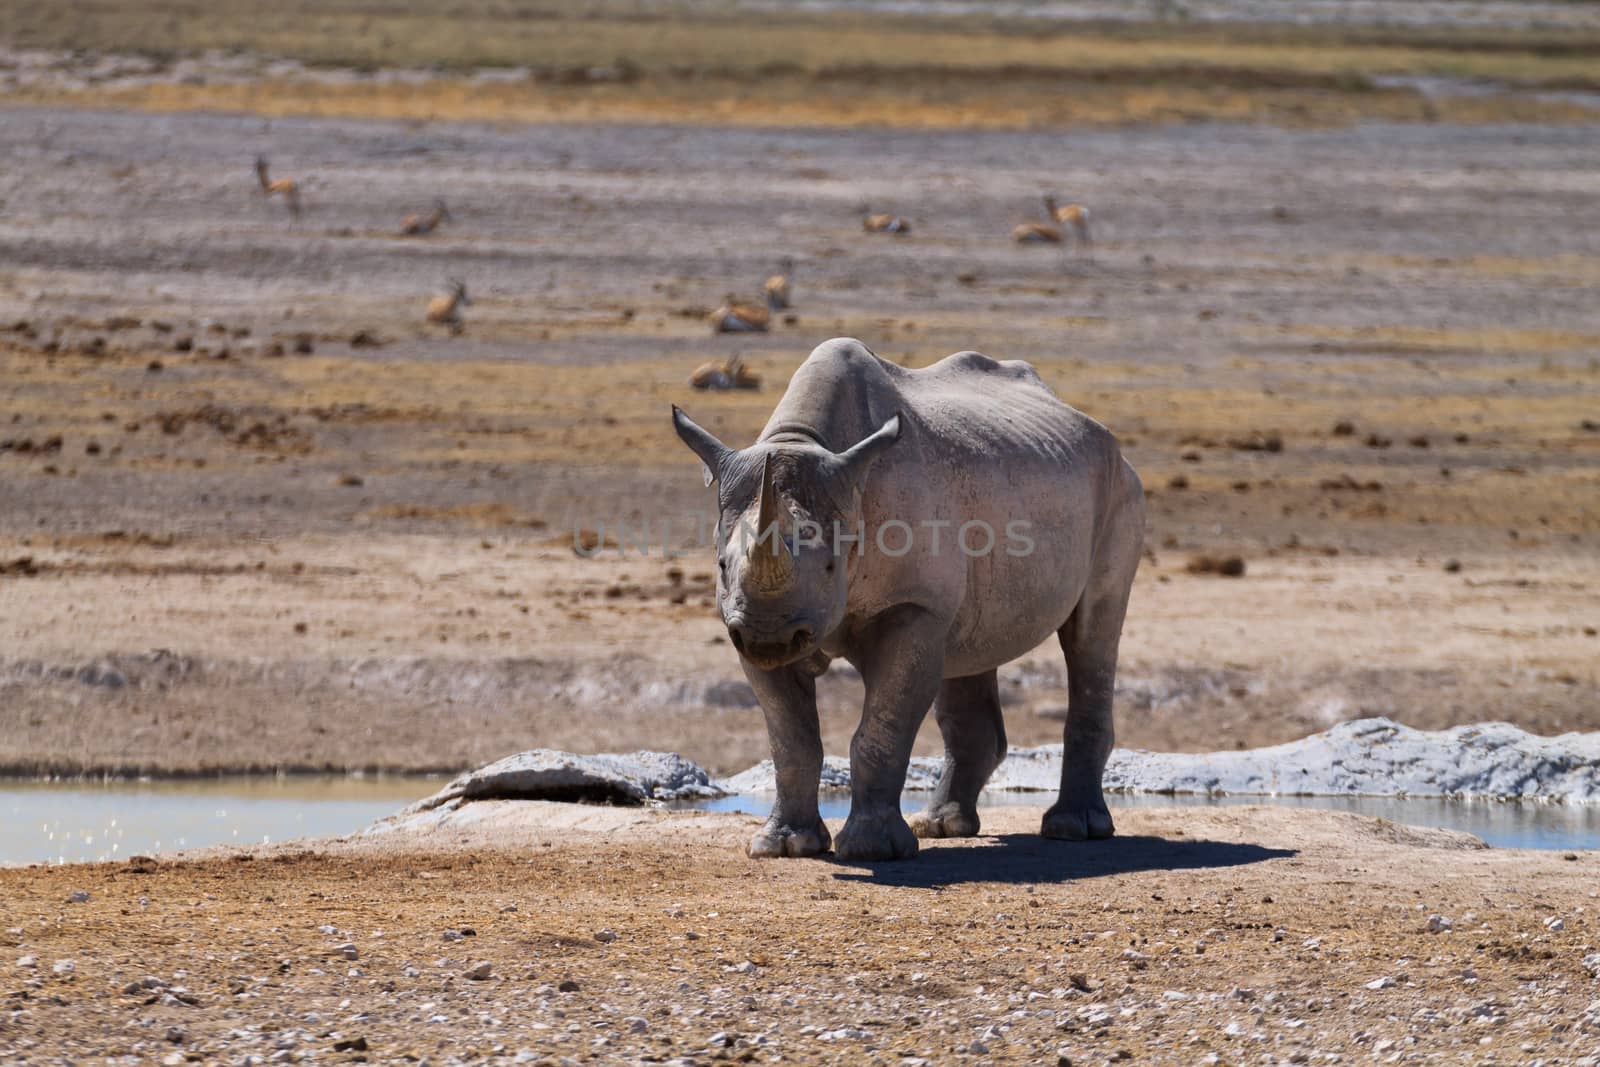 Black rhinoceros from Etosha National Park, Namibia